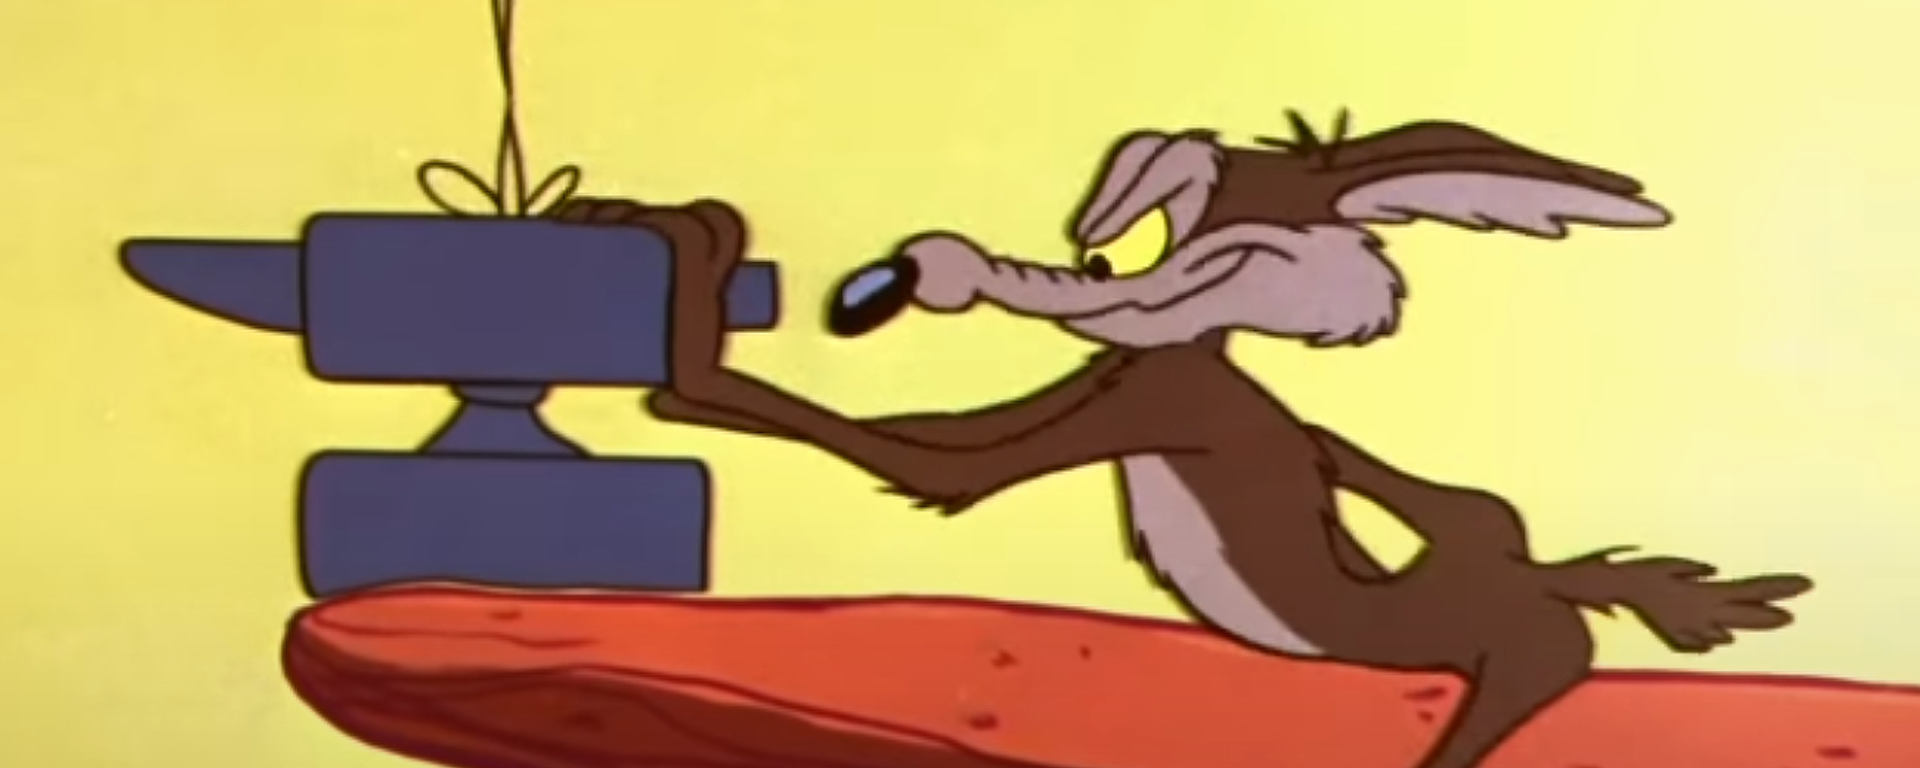 Un personaje de 'Looney Tunes' empuja un yunque - Sputnik Mundo, 1920, 26.08.2021